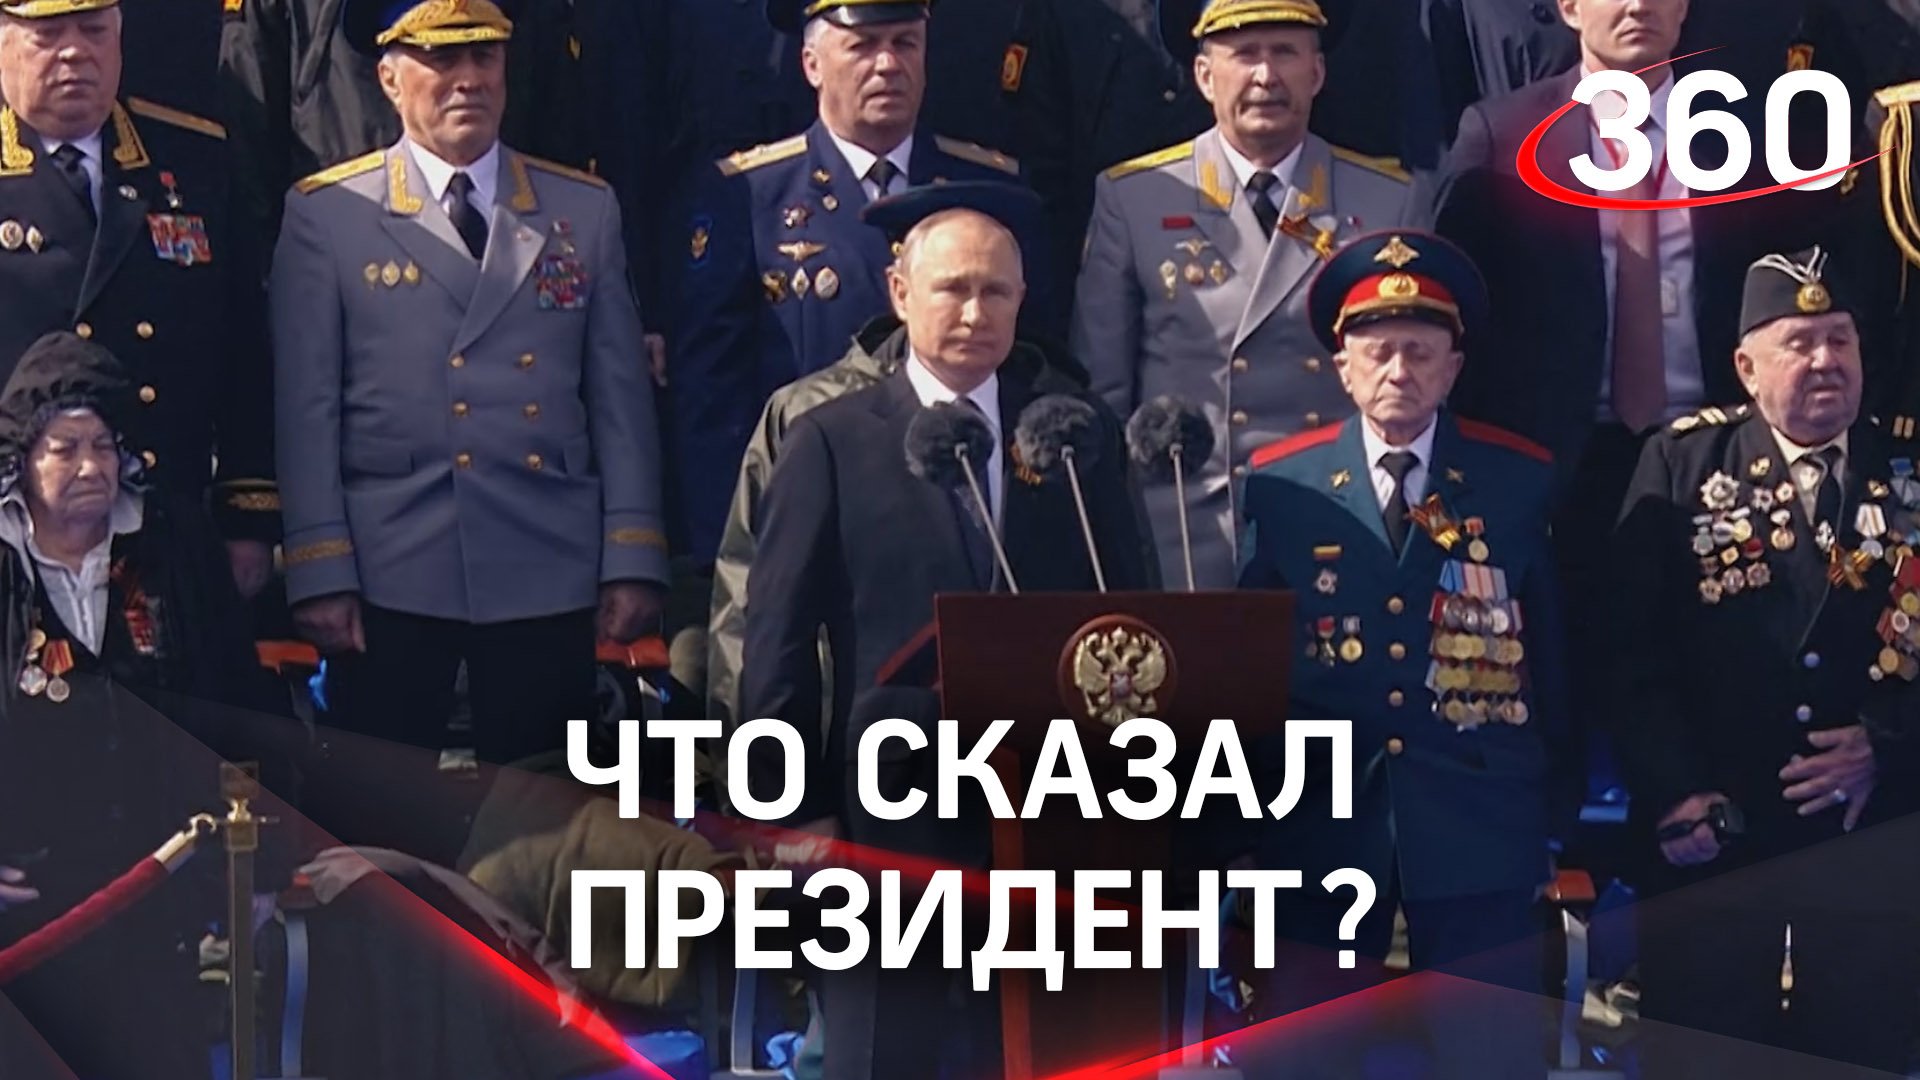 Владимир Путин выступил на Параде Победы с речью, в которой назвал спецоперацию на Украине «единстве